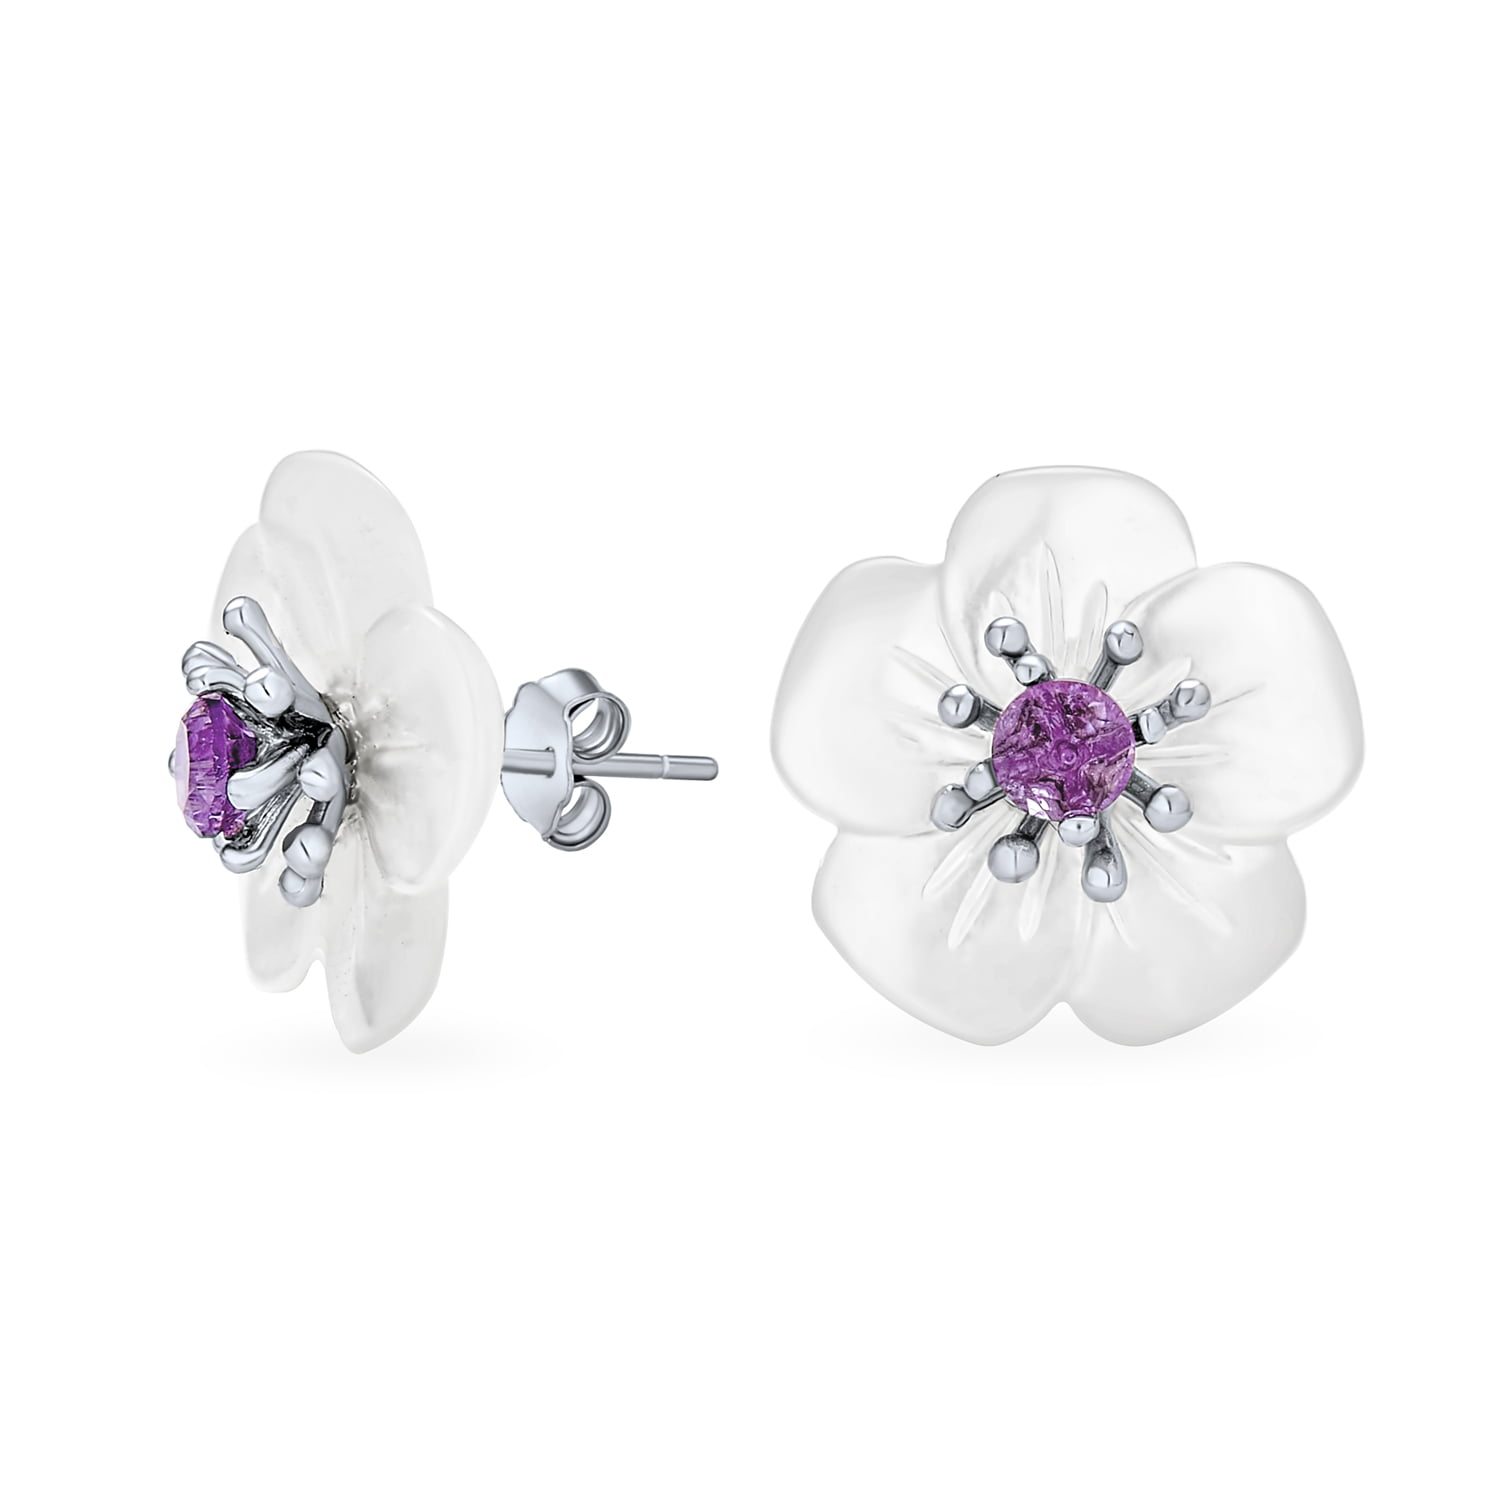 3mm Gemstones Faceted Amethyst Sterling Silver Stud Earrings Purple Gemstones.